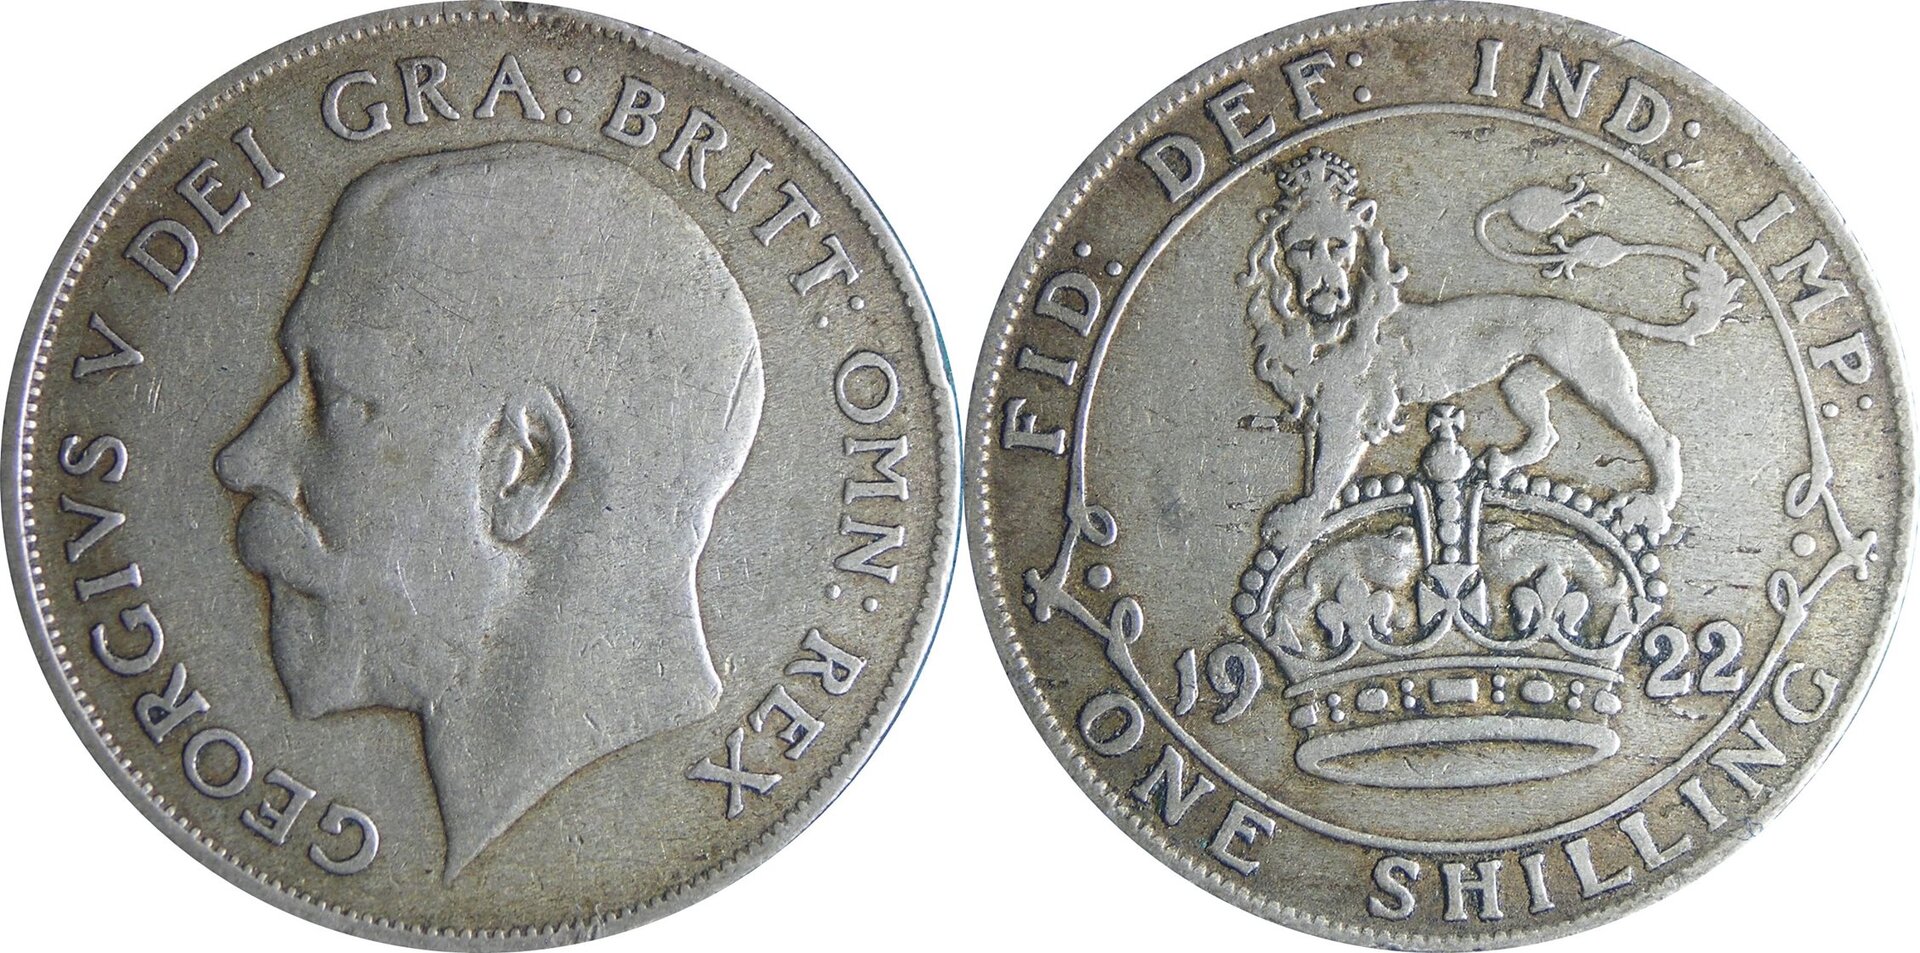 1922 GB shilling.jpg